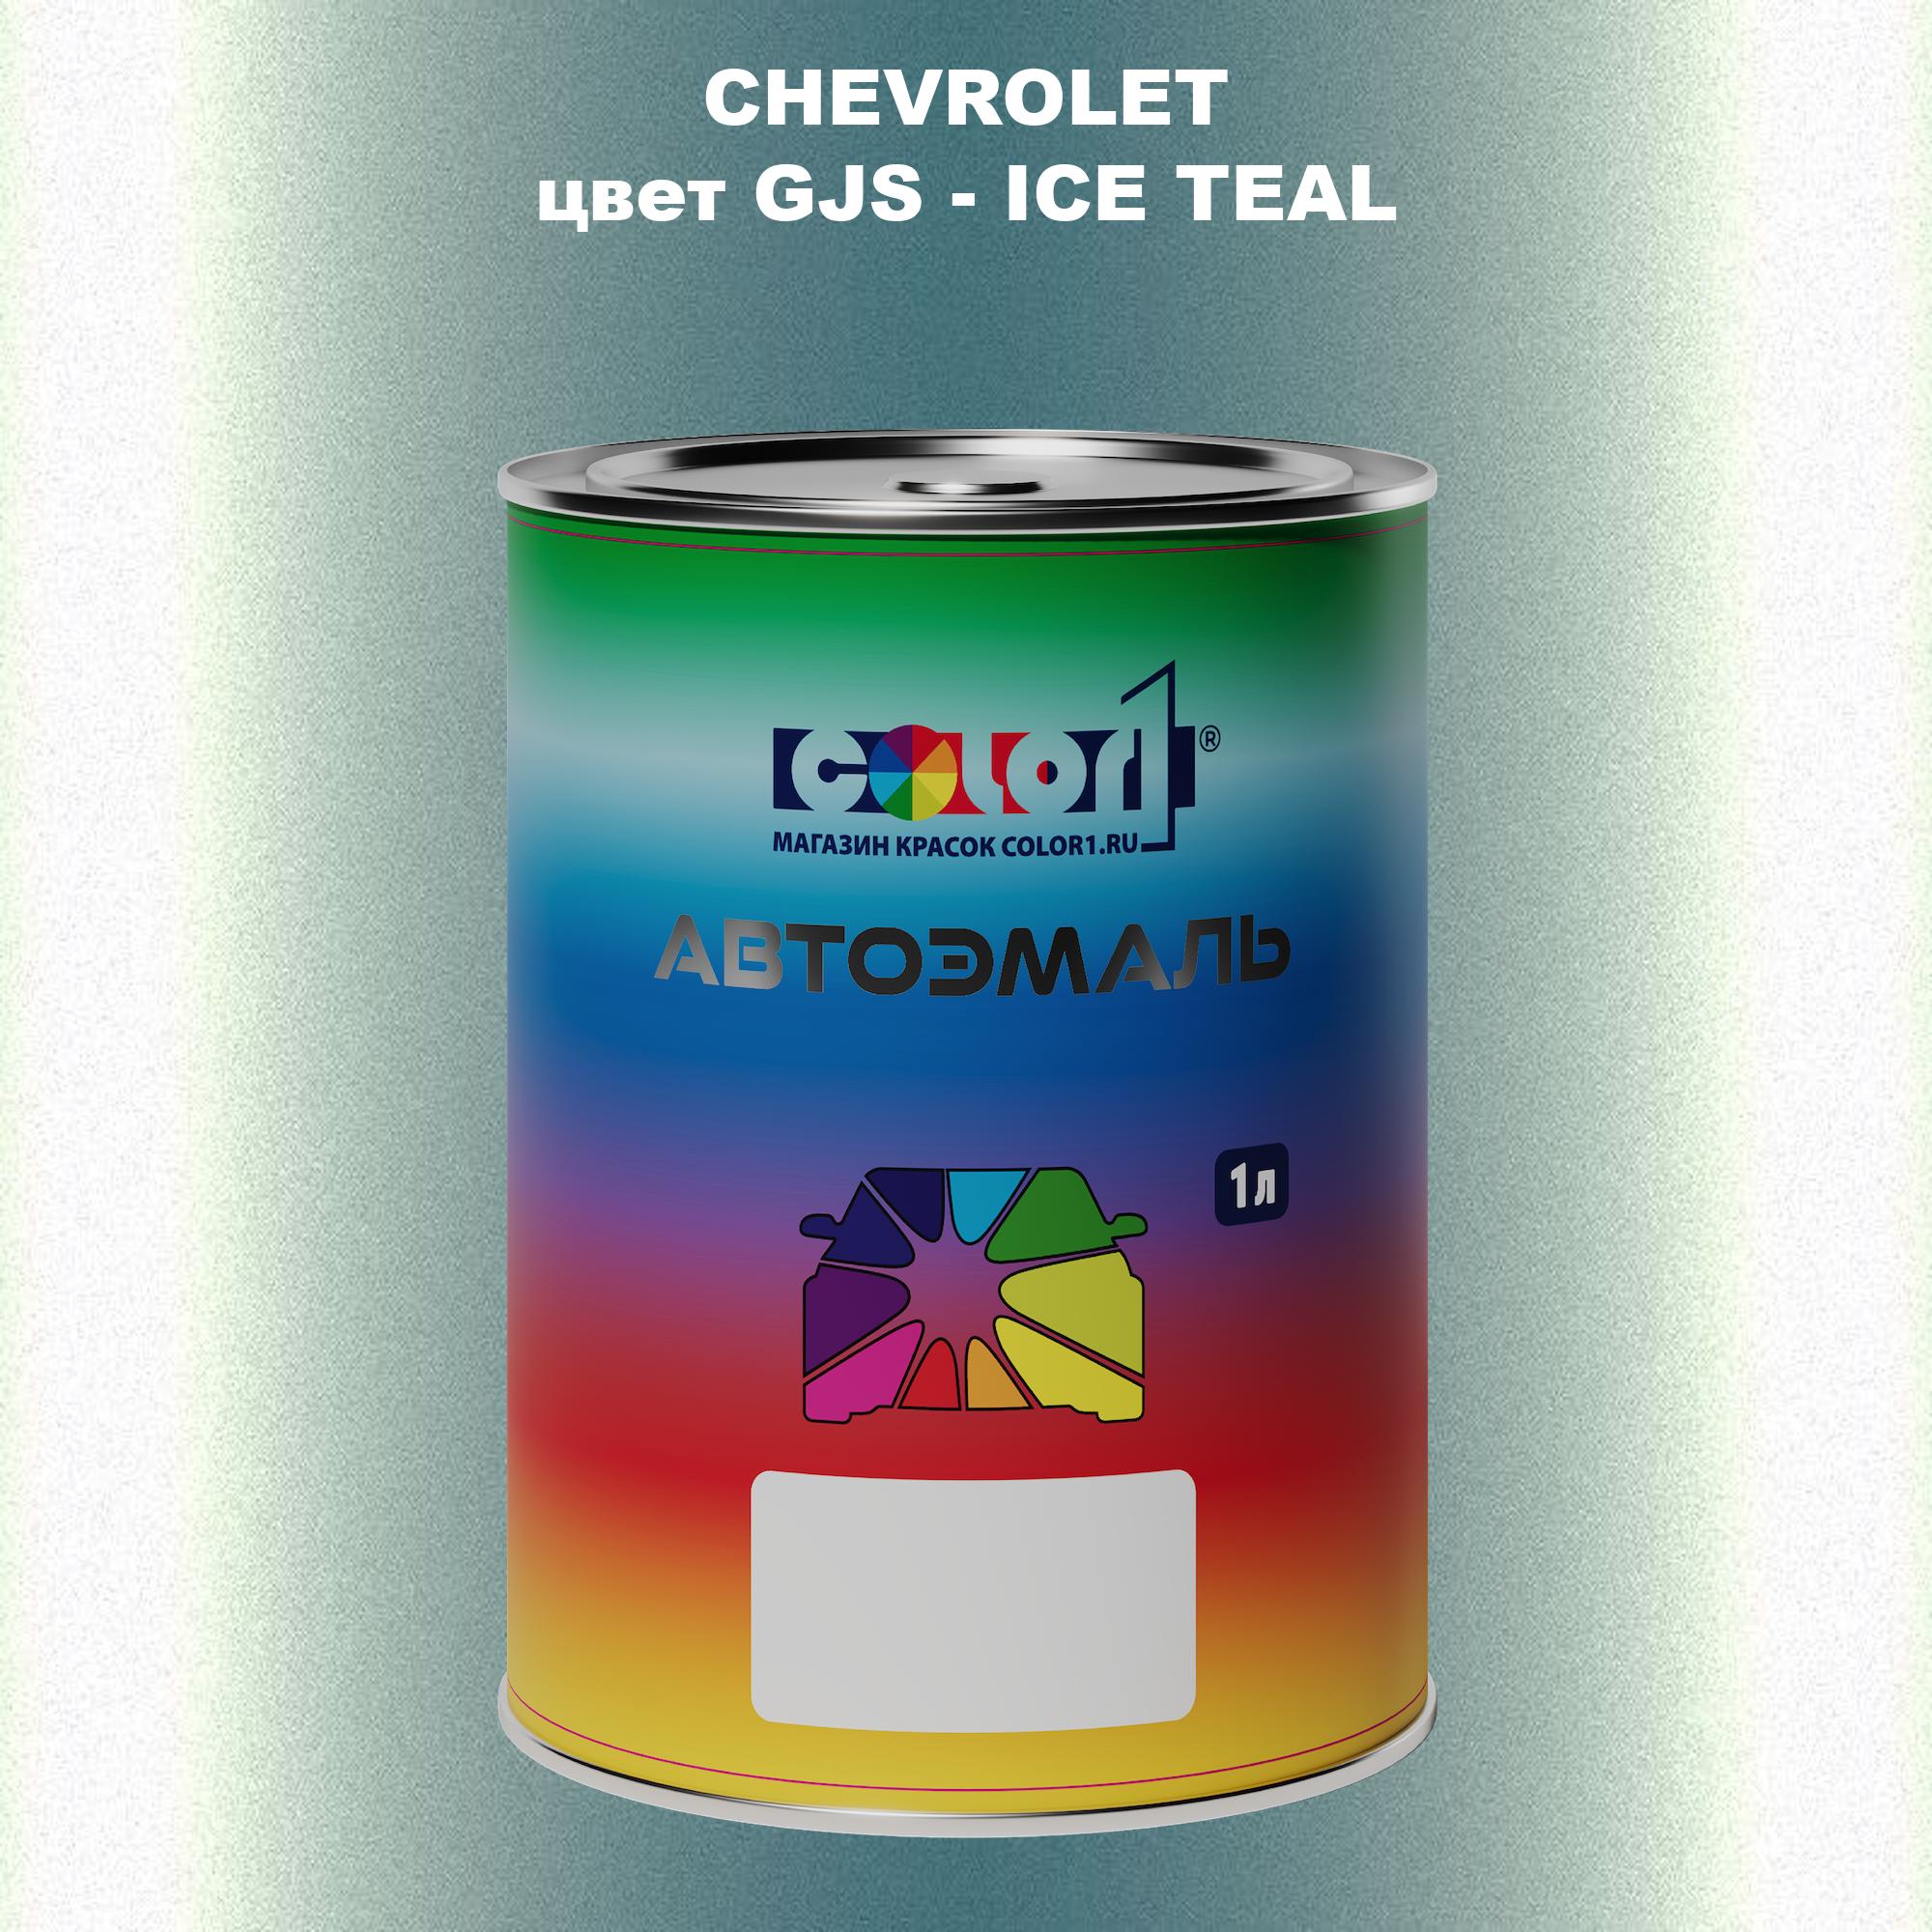 Автомобильная краска COLOR1 для CHEVROLET, цвет GJS - ICE TEAL